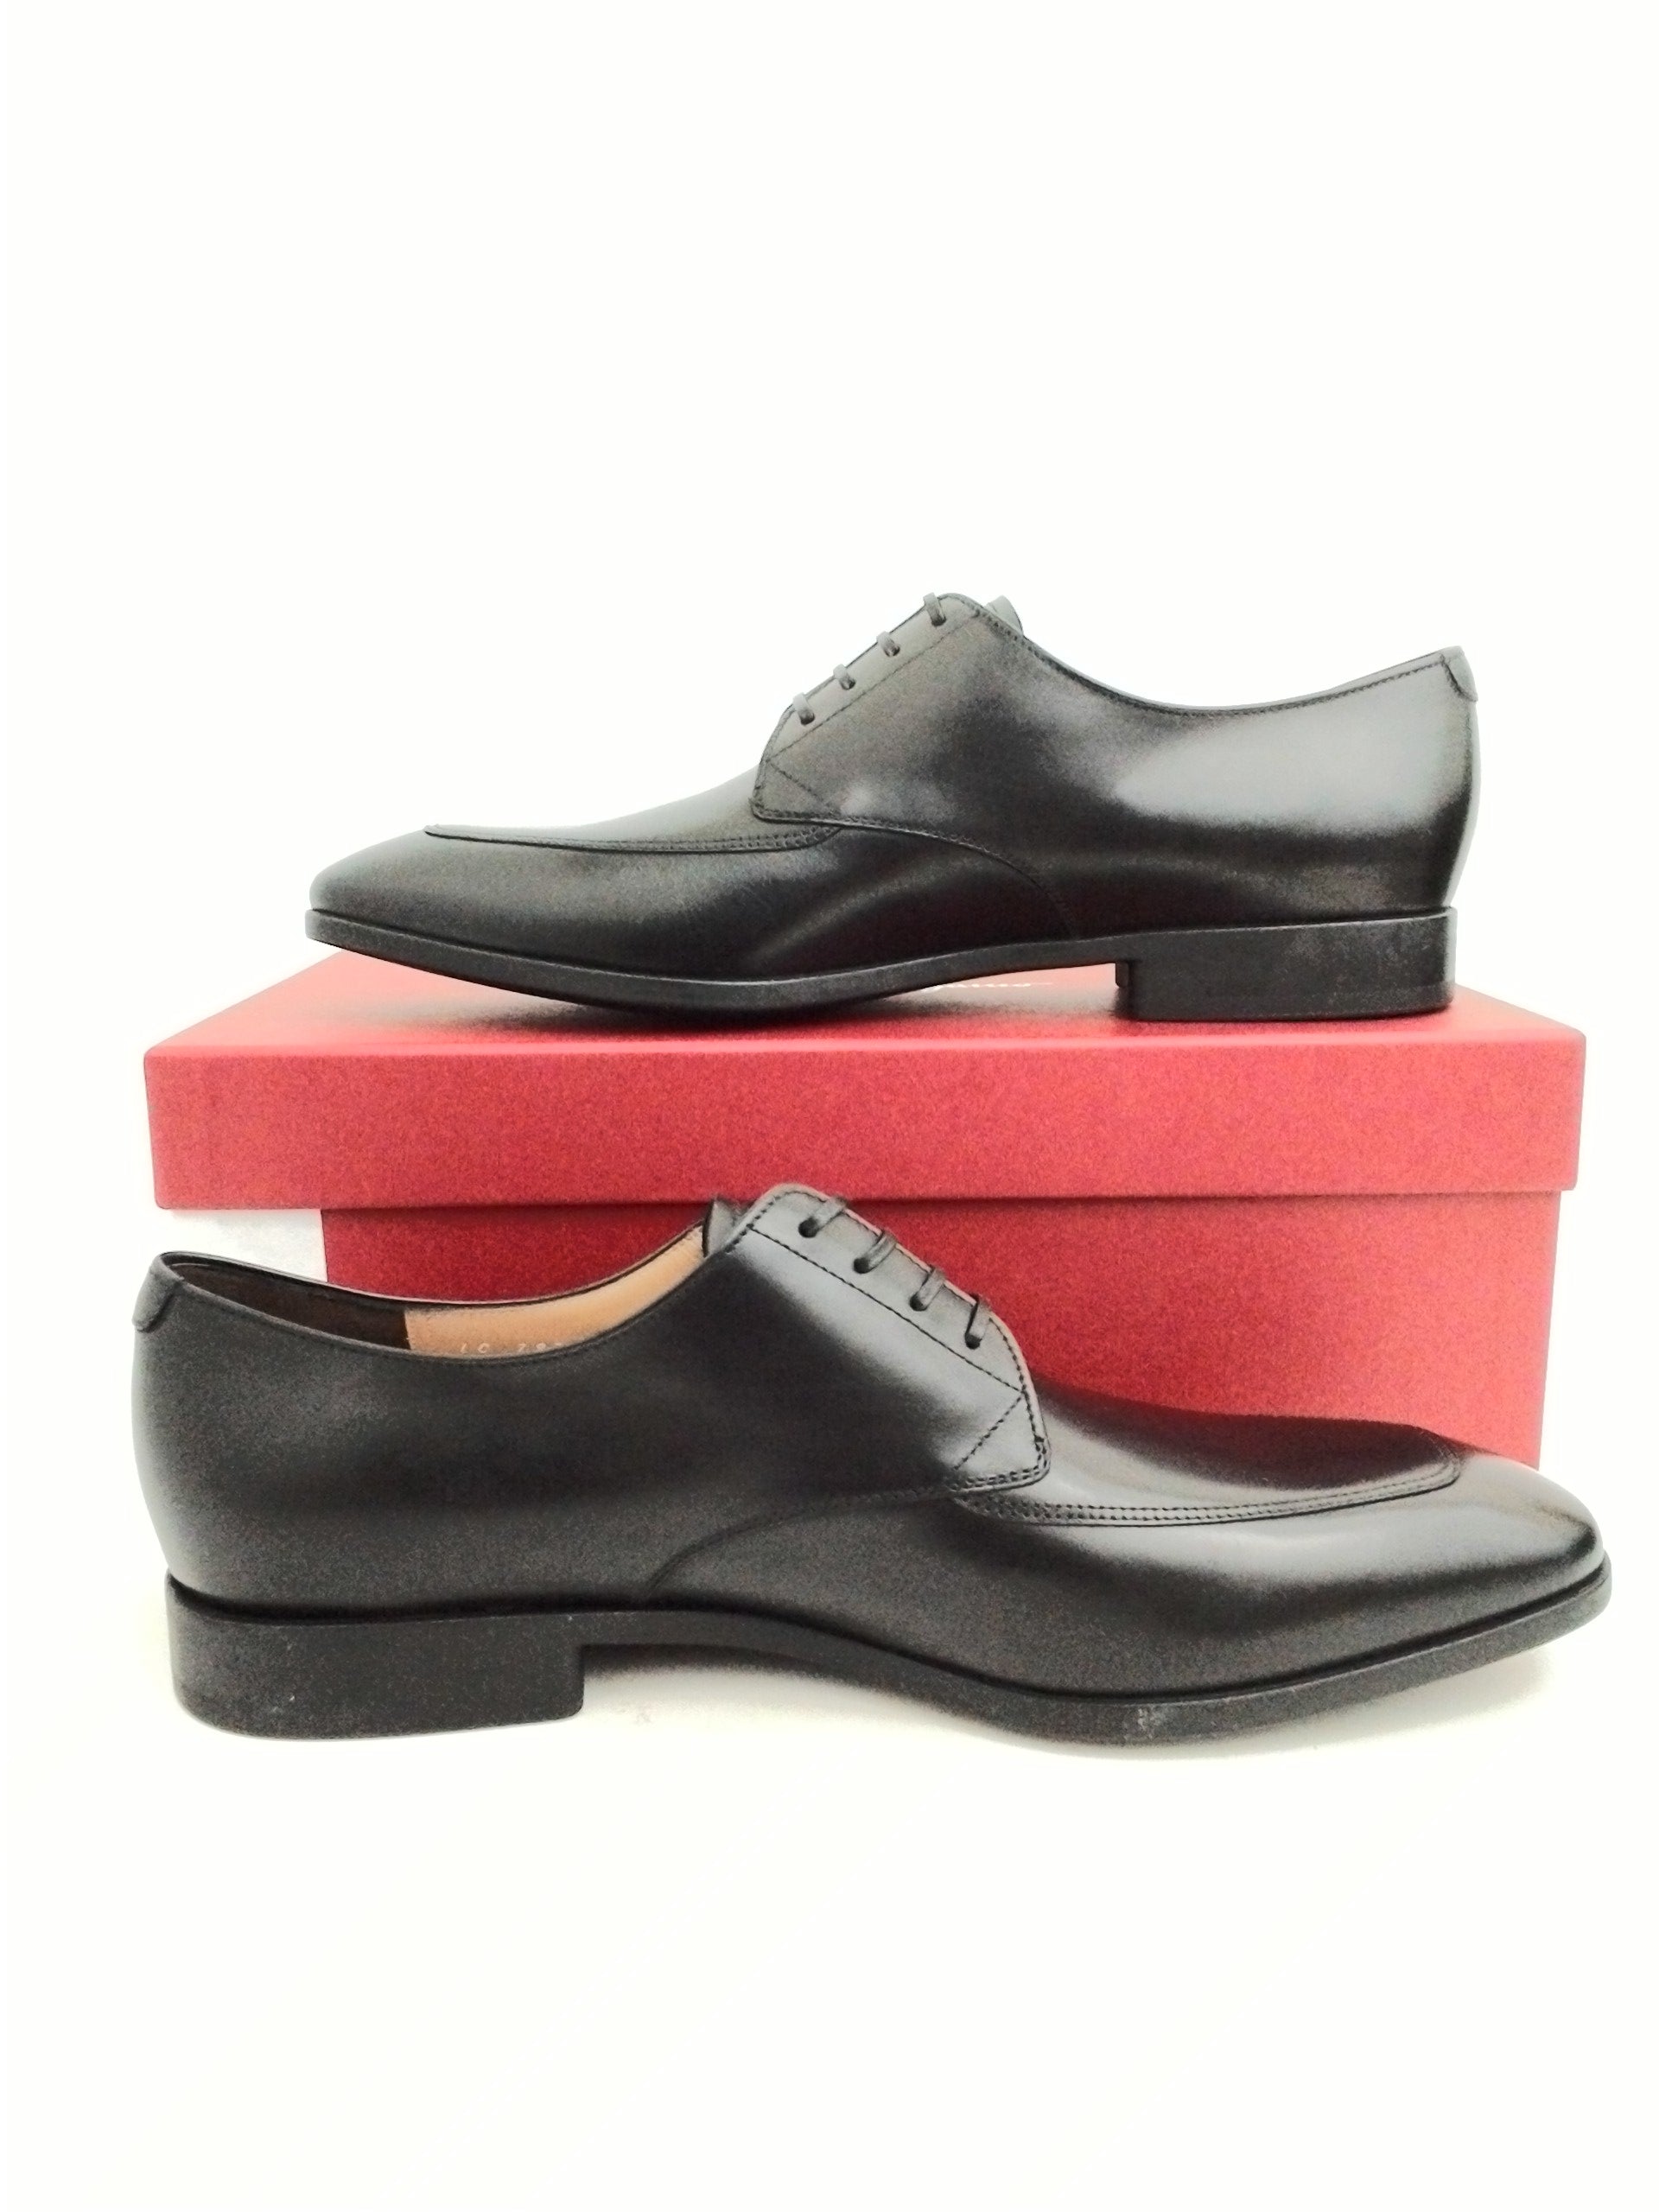 Salvatore Ferragamo Men's Tristano Nero Calf Leather Dress Shoes Size ...